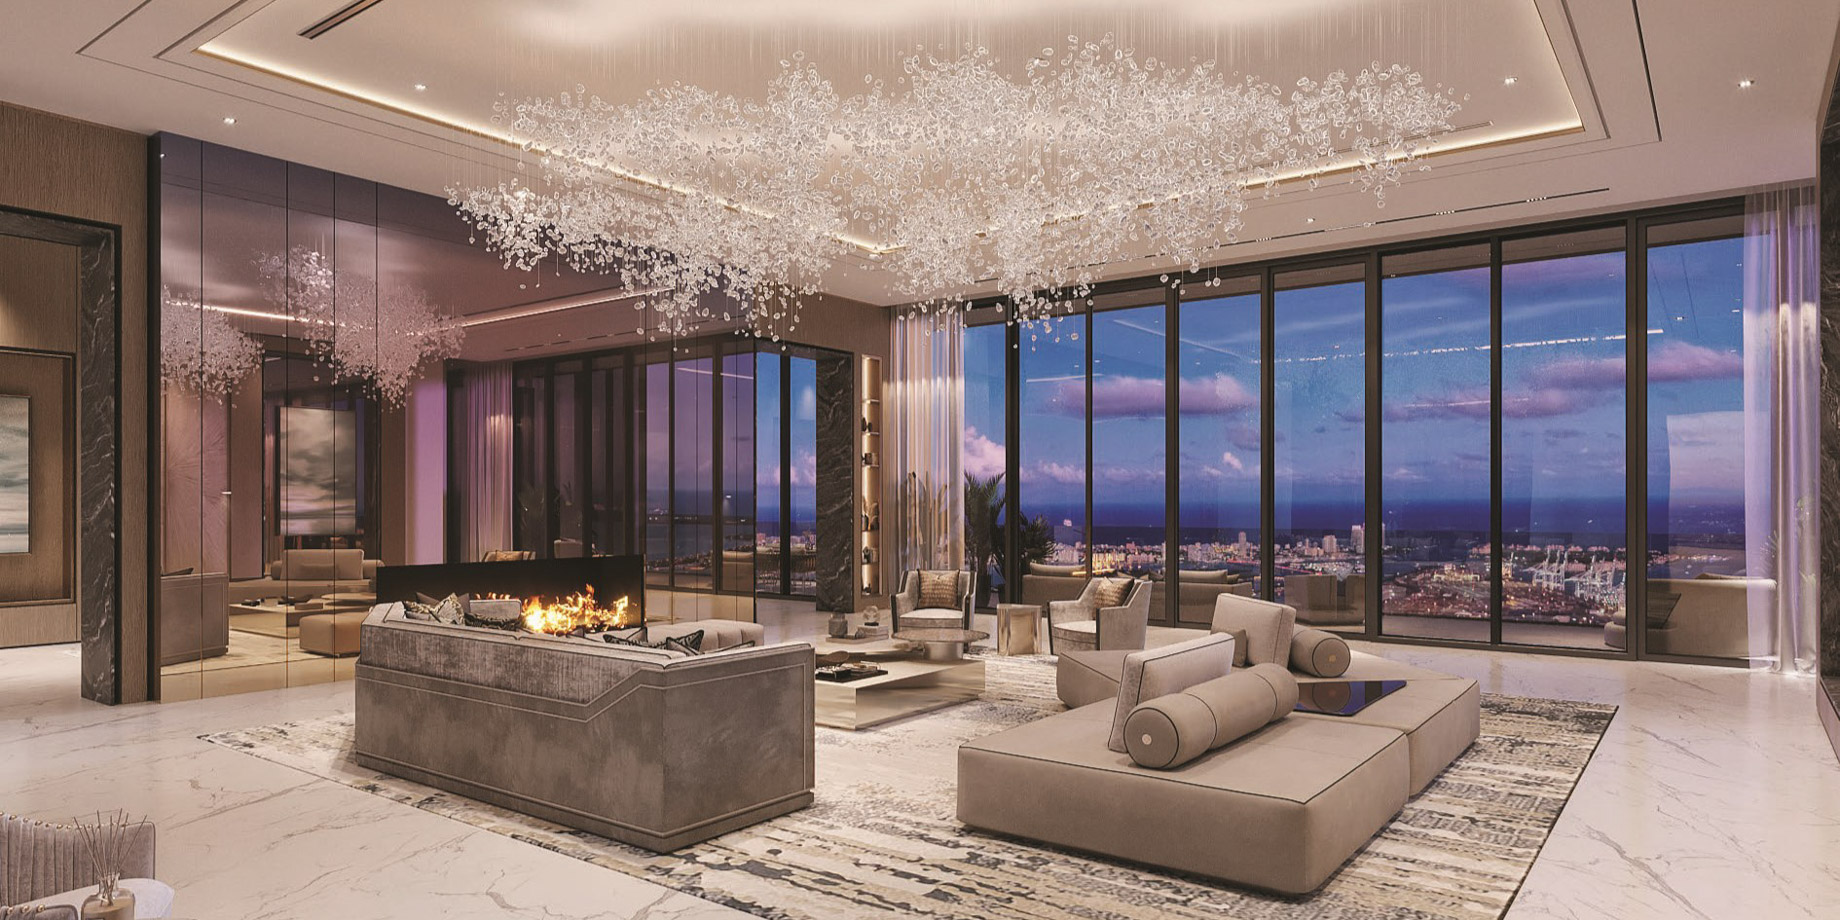 Luxury Condo Interior – Waldorf Astoria Residences – Downtown Miami